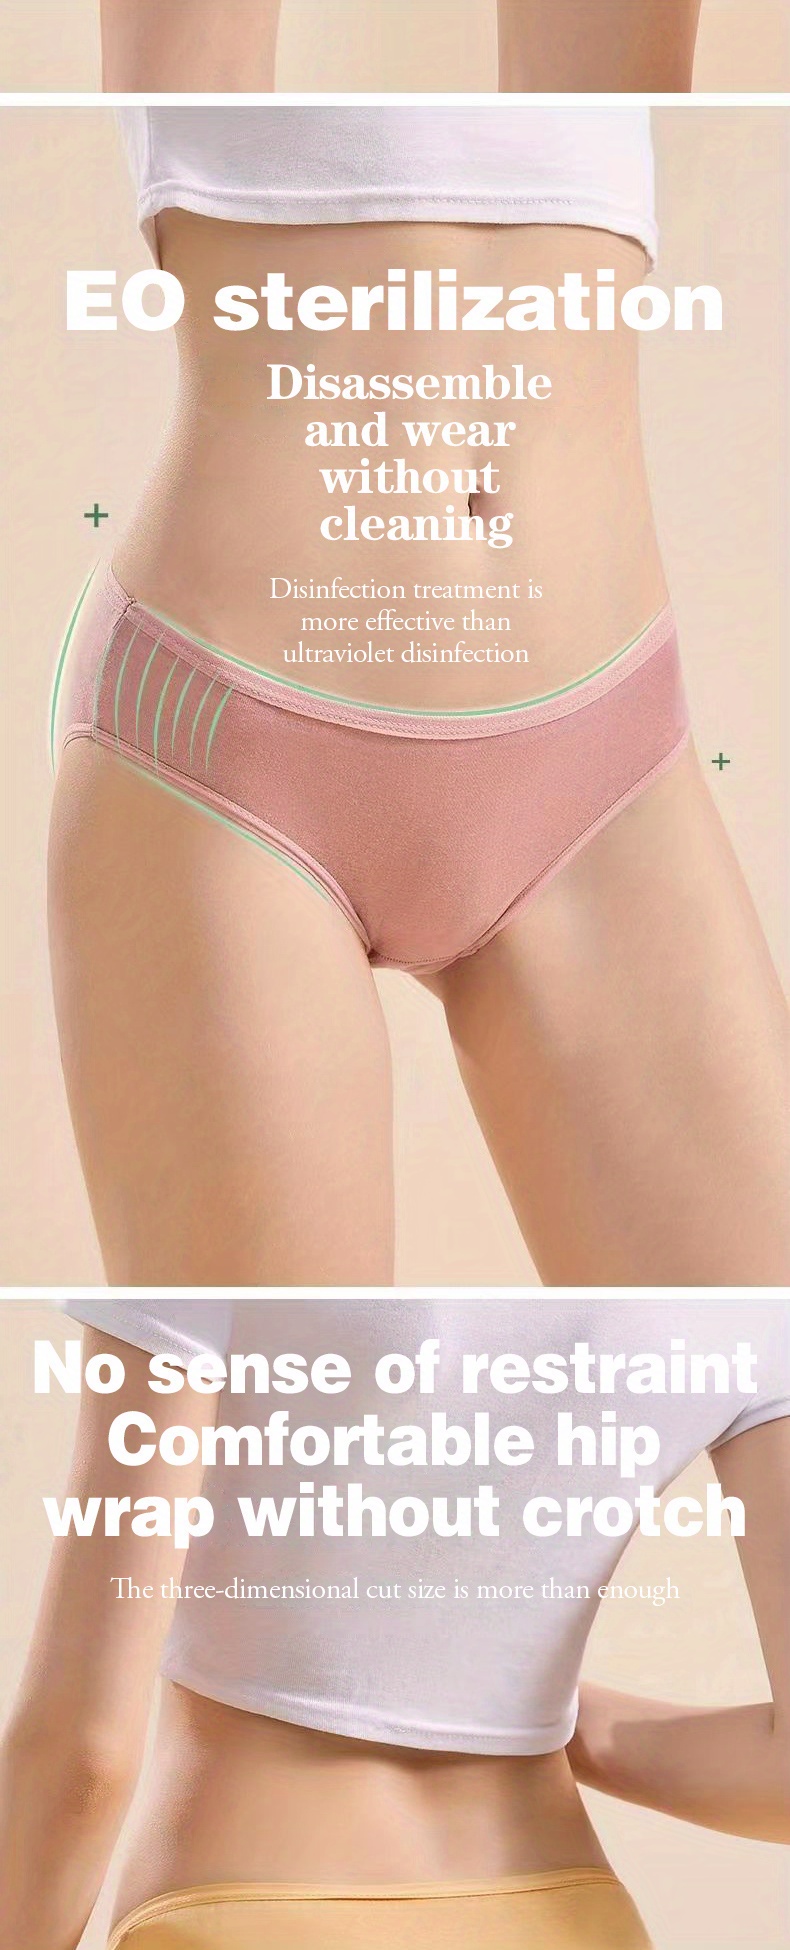 7 Pcs Women's Disposable Underwear, Pure Female Underwear For Travel  Outdoor Trip Menstrual Period Postpartum Supplies